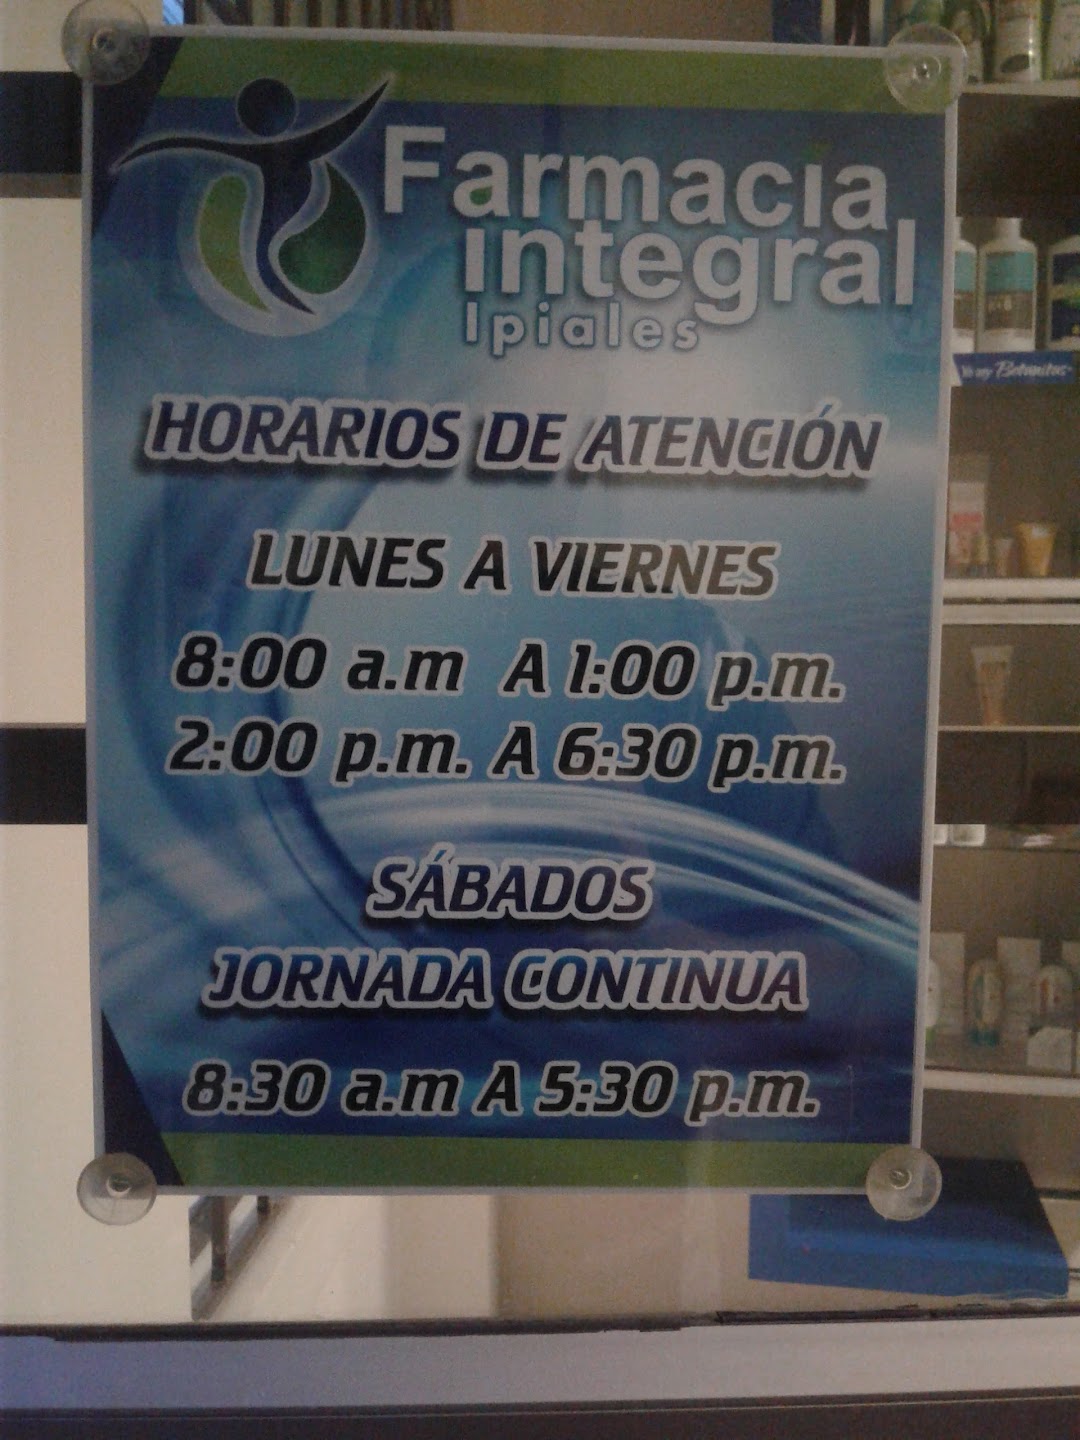 Farmacia Integral Ipiales